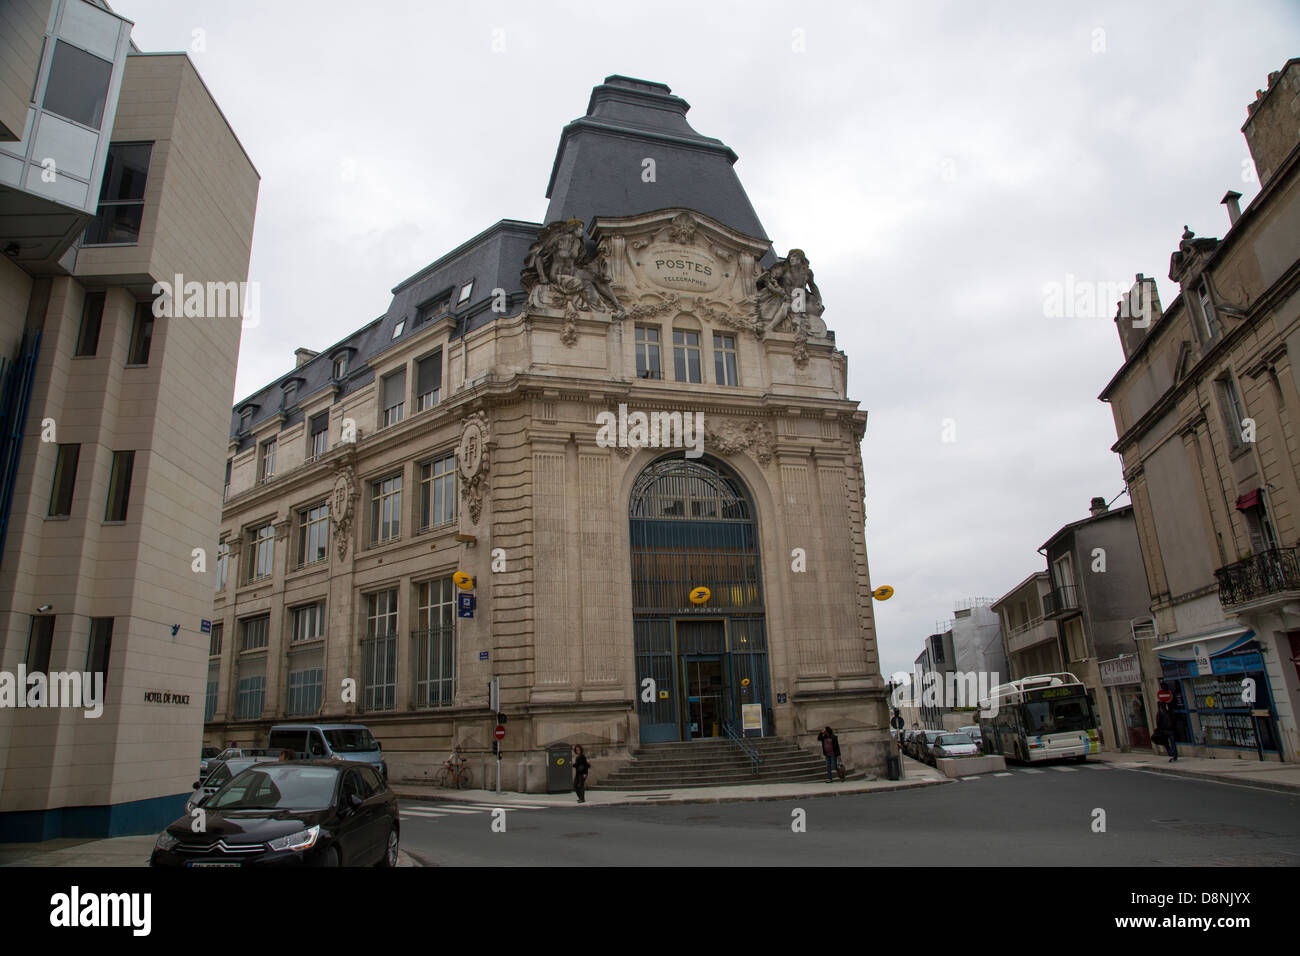 Poitiers principale Post Office central city building ornato Foto Stock